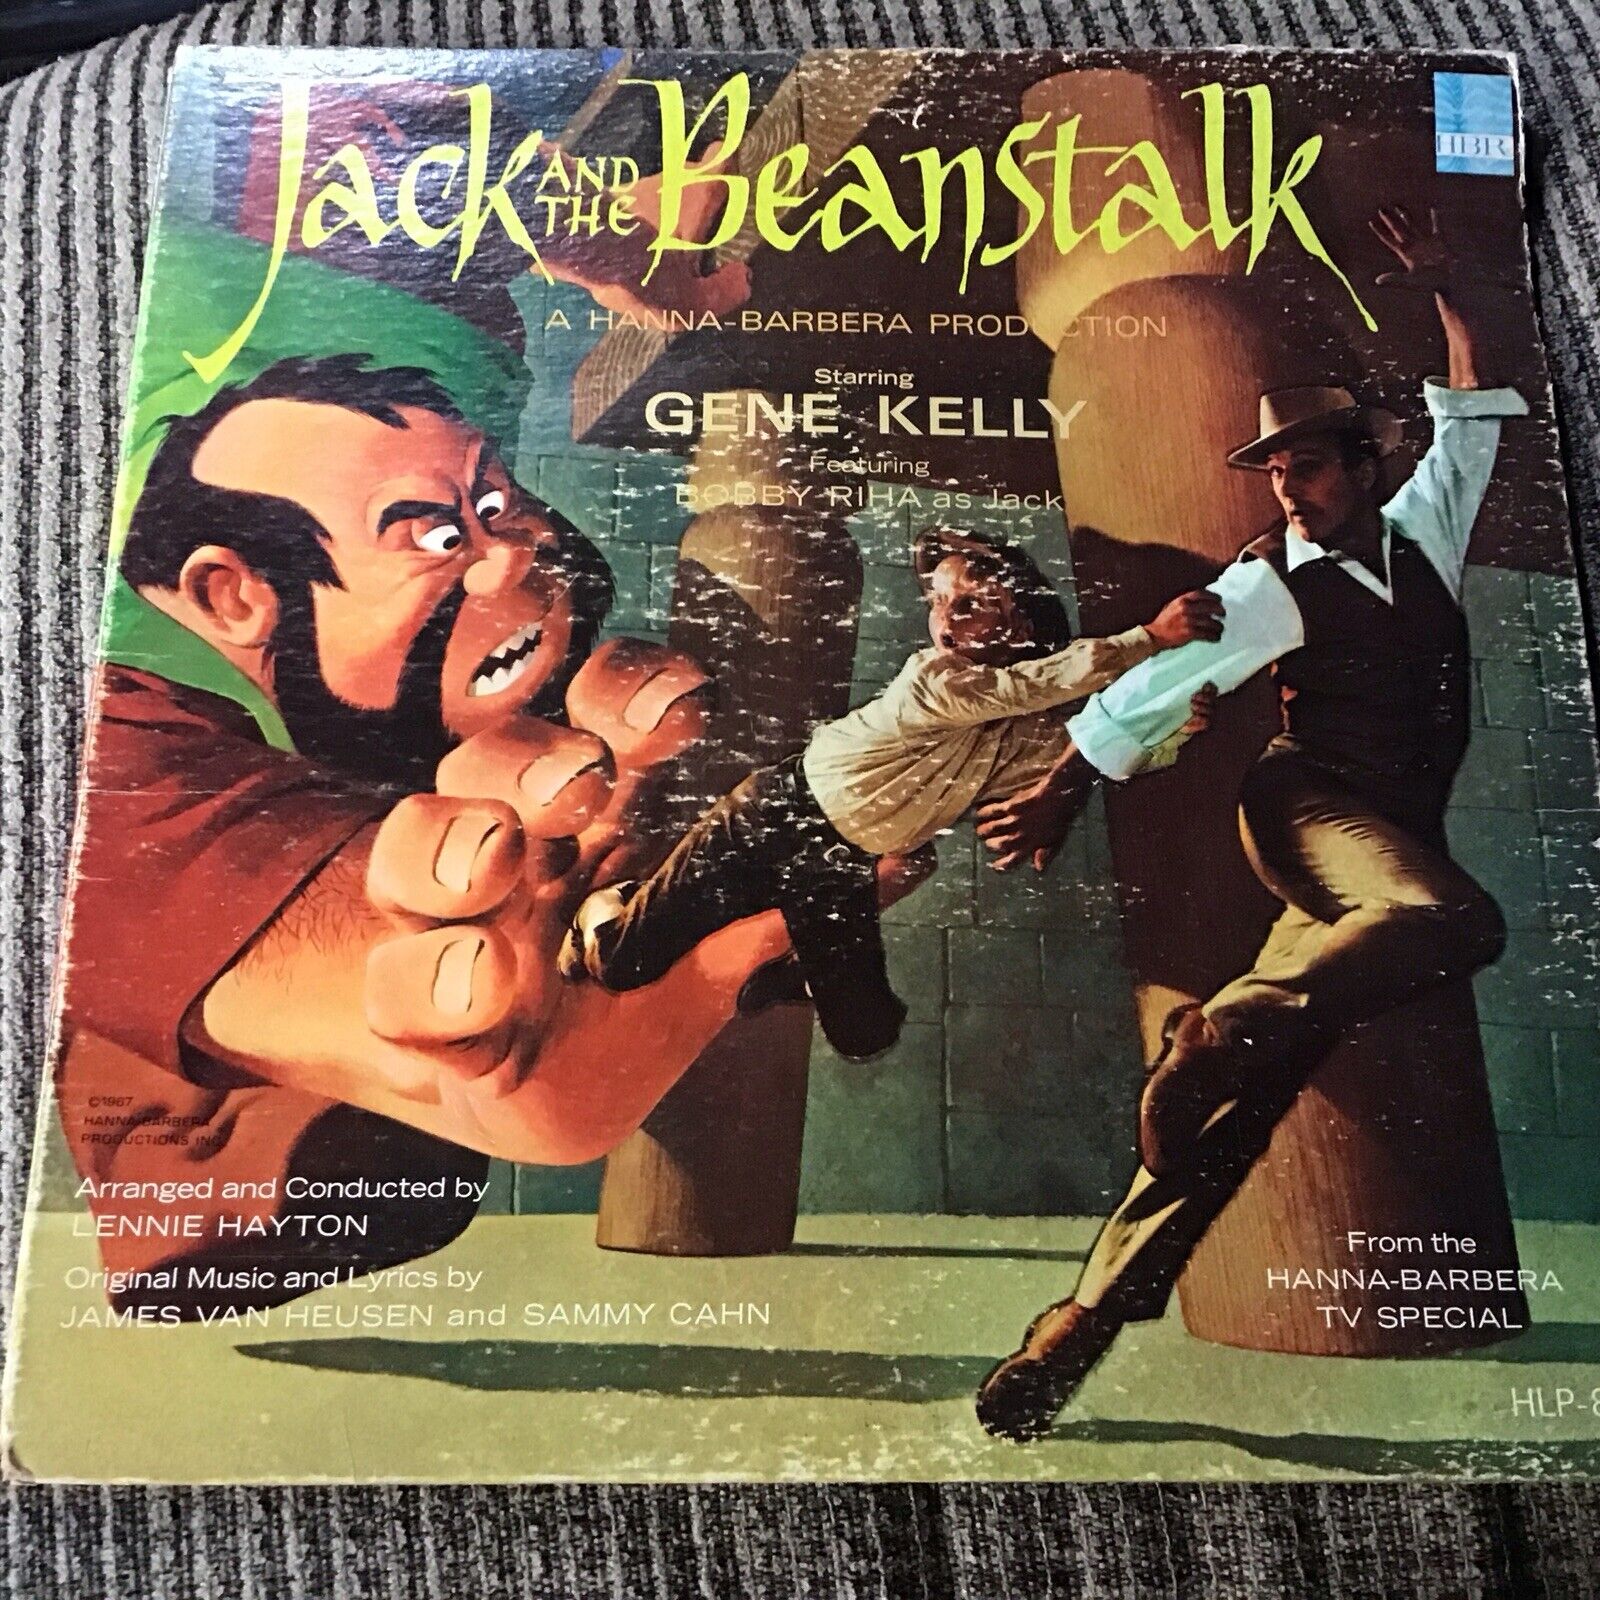 JACK AND THE BEANSTALK 1966 PROMO LP HBR PRINT VINTAGE VINYL GENE KELLY OOP